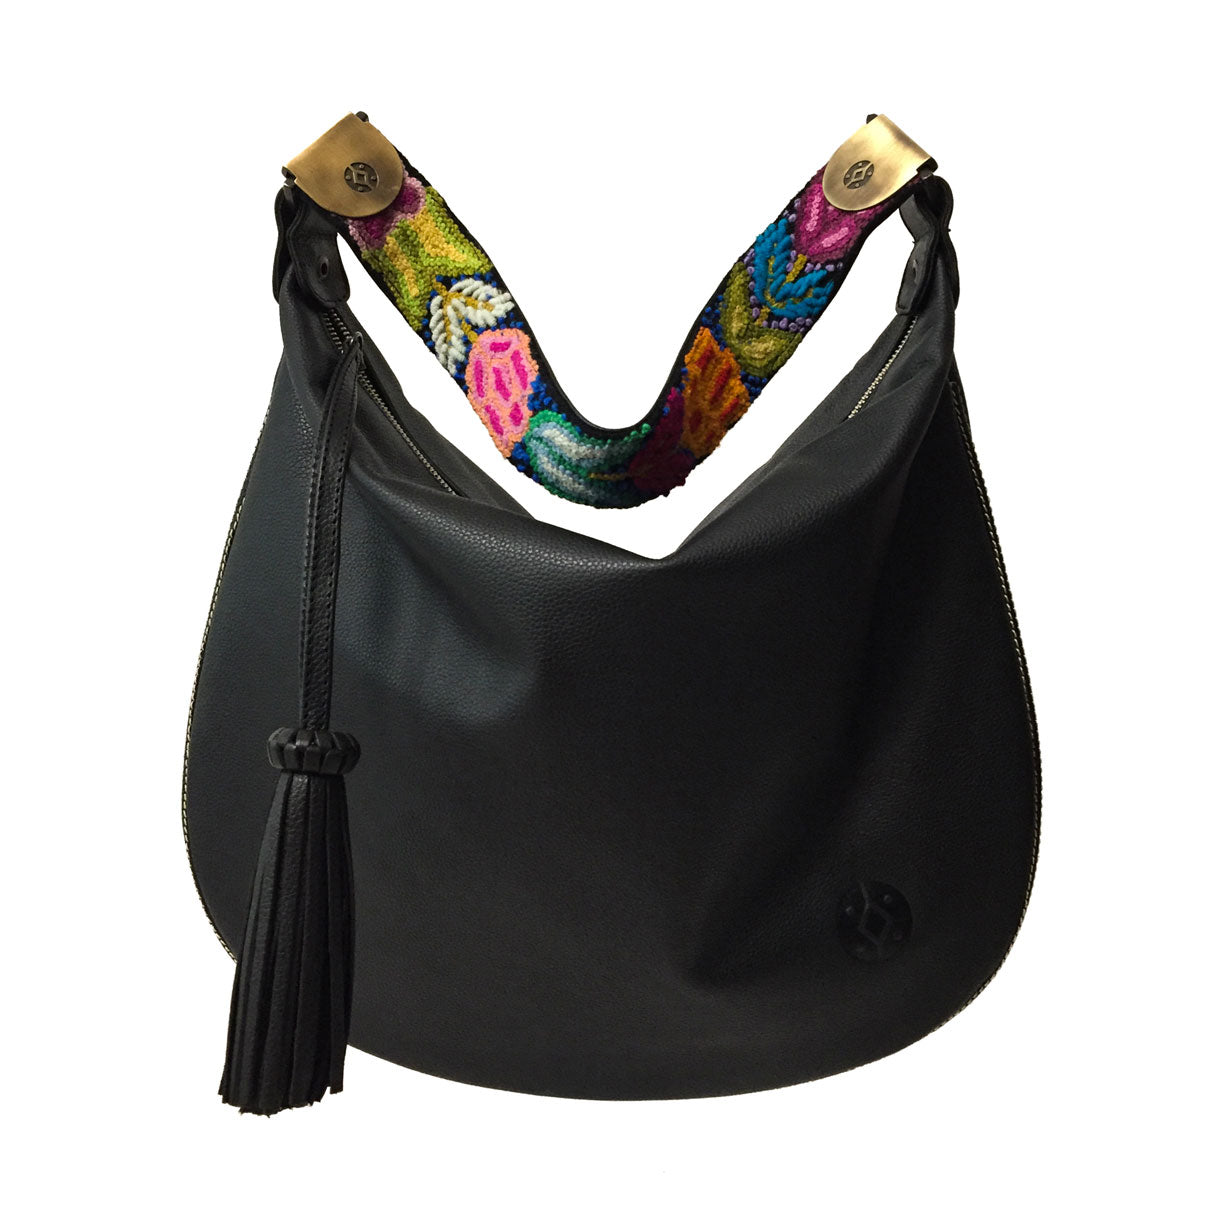 Bolsa de piel al hombro para mujer con cierre con asa de artesanía peruana color negro